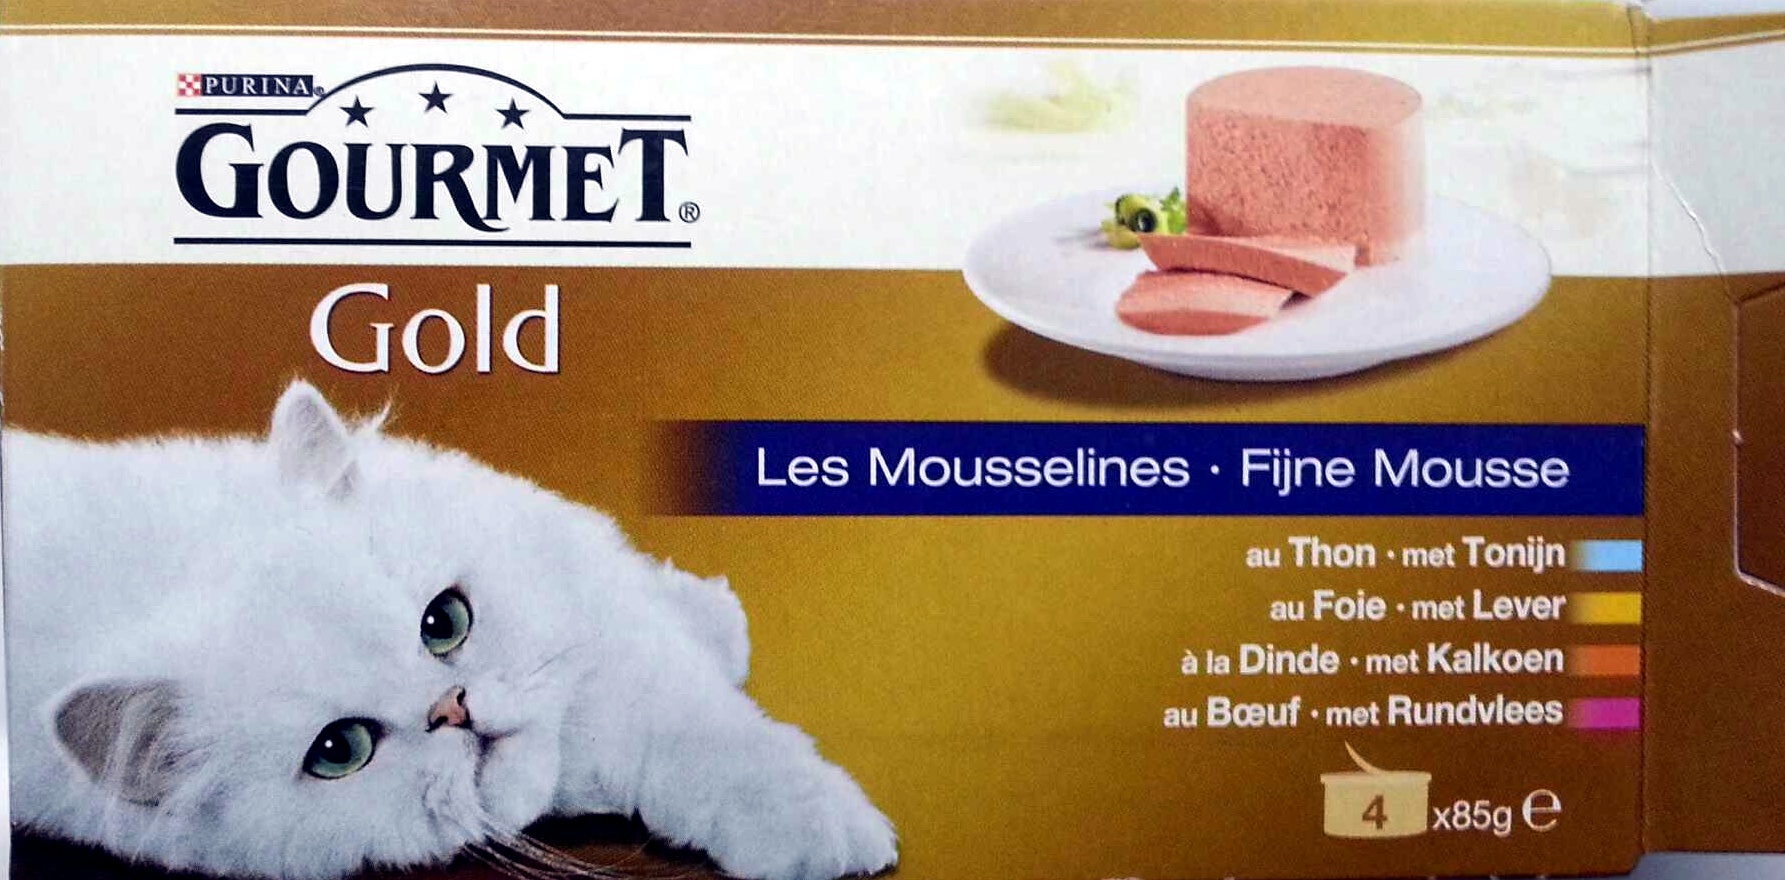 Gourmet Gold - Les Mousselines - Product - fr